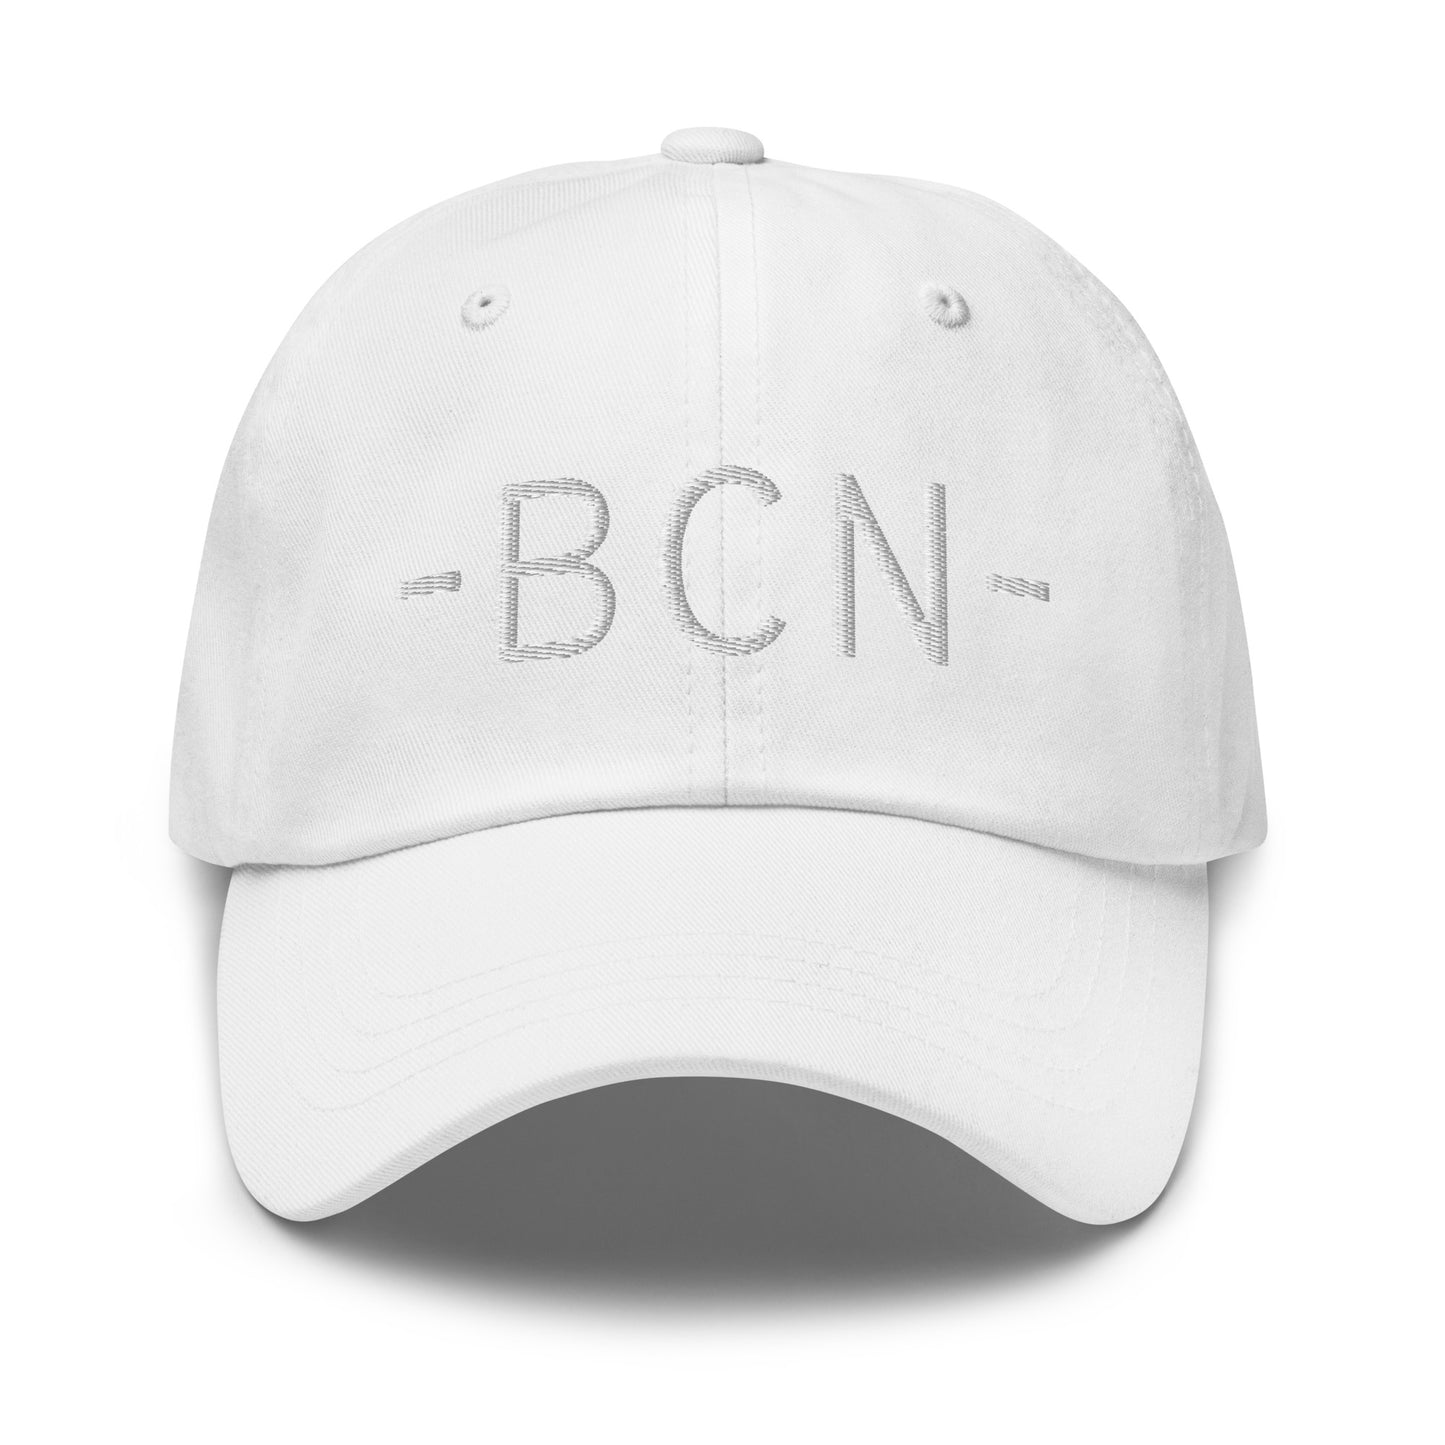 Souvenir Baseball Cap - White • BCN Barcelona • YHM Designs - Image 29